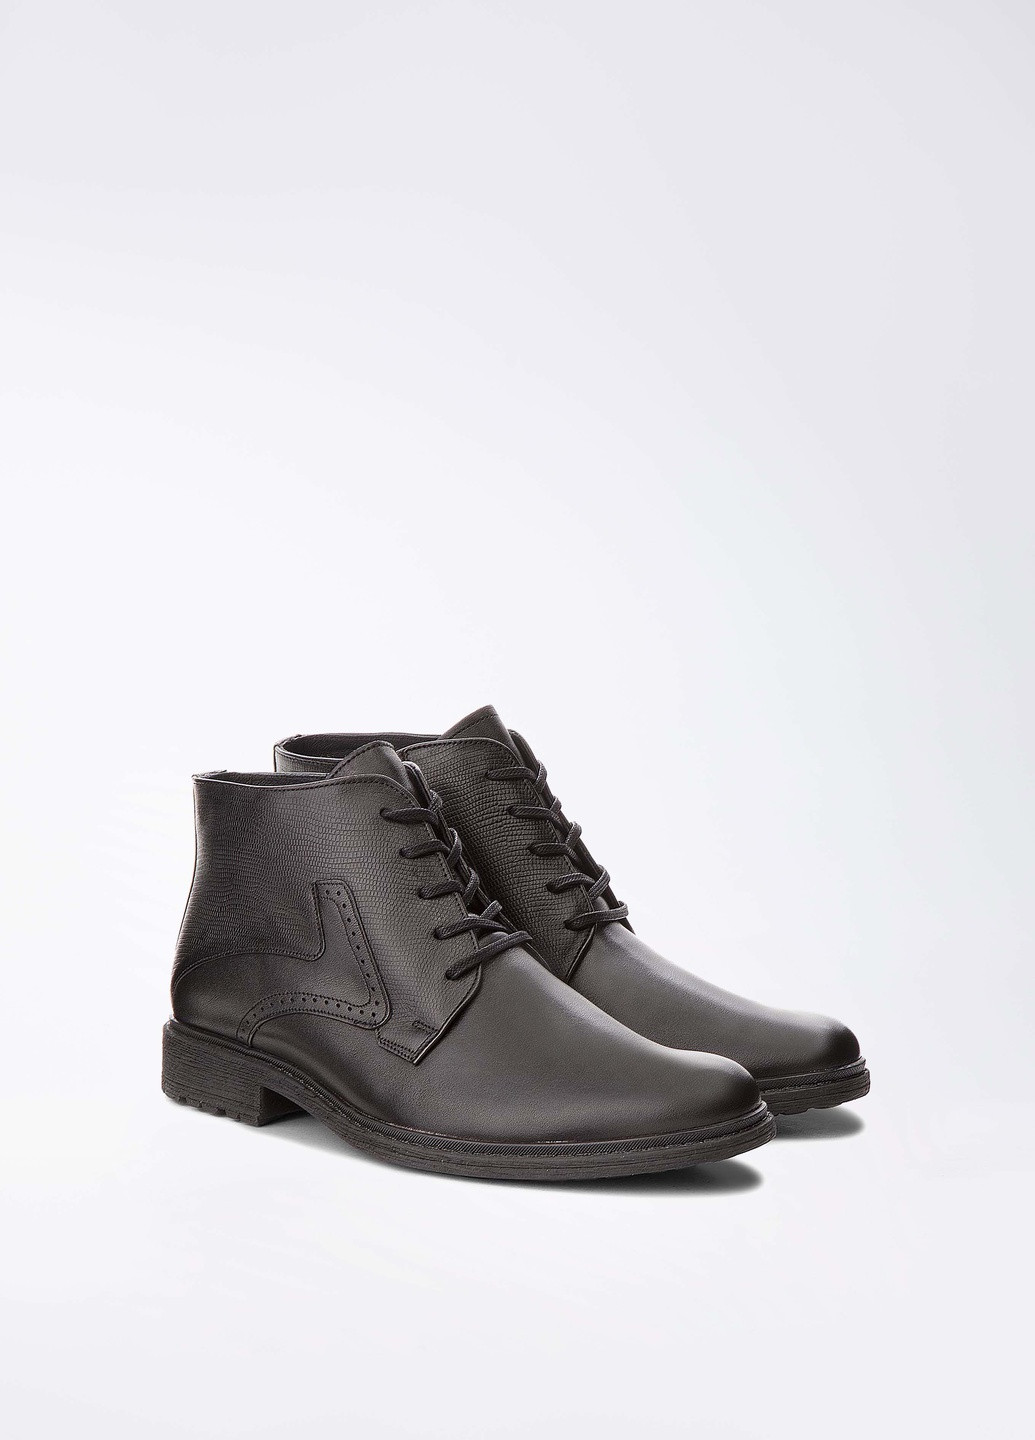 Черные зимние черевики sm-ta-lz24 Lasocki for men